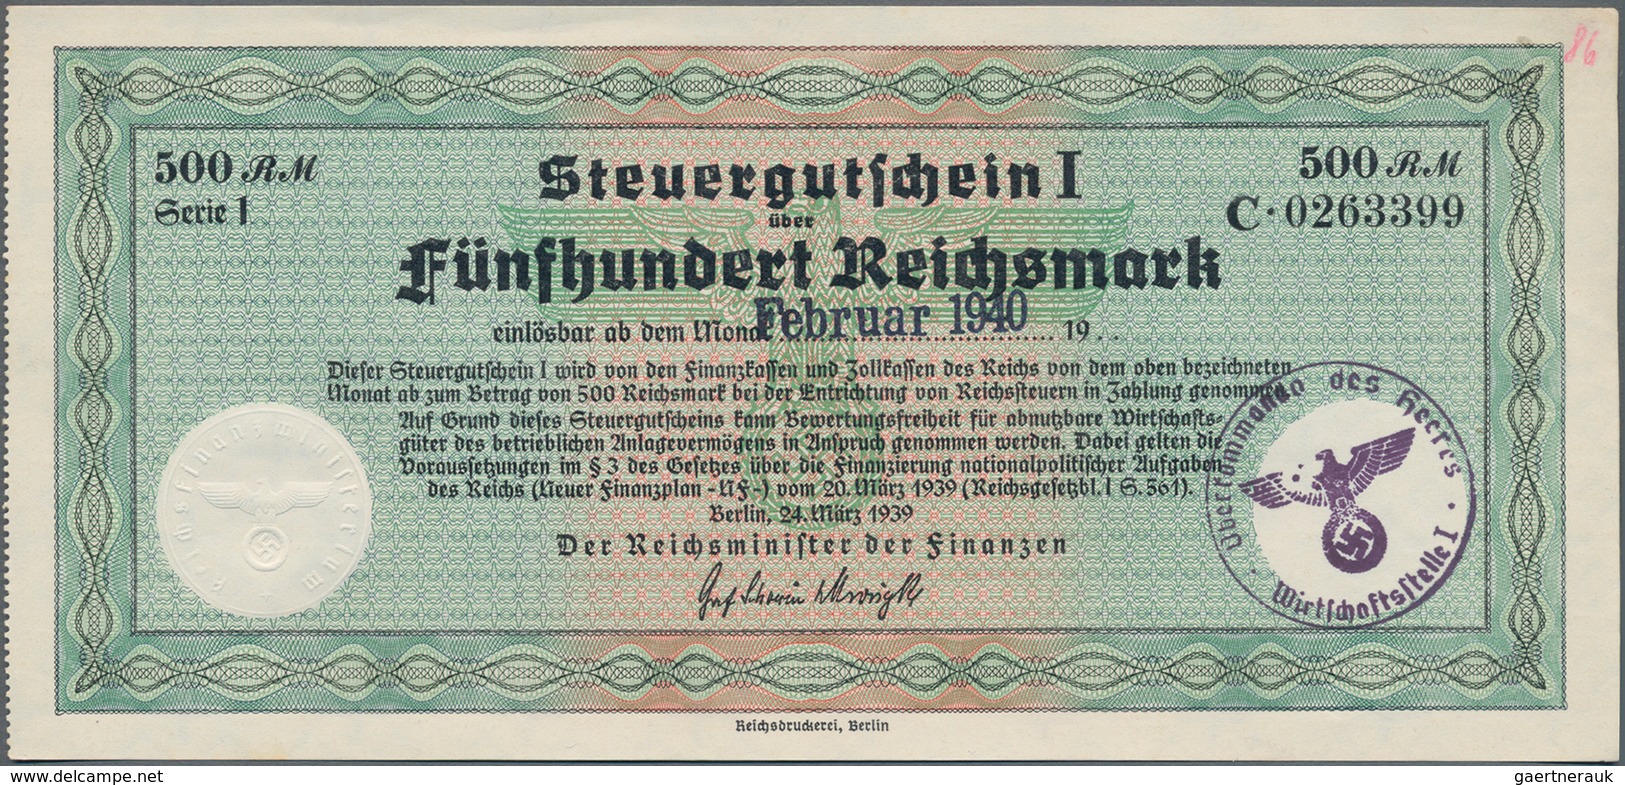 Deutschland - Deutsches Reich bis 1945: Steuergutscheine. Lot von 5 Steuergutscheinen I zu 200 RM 19